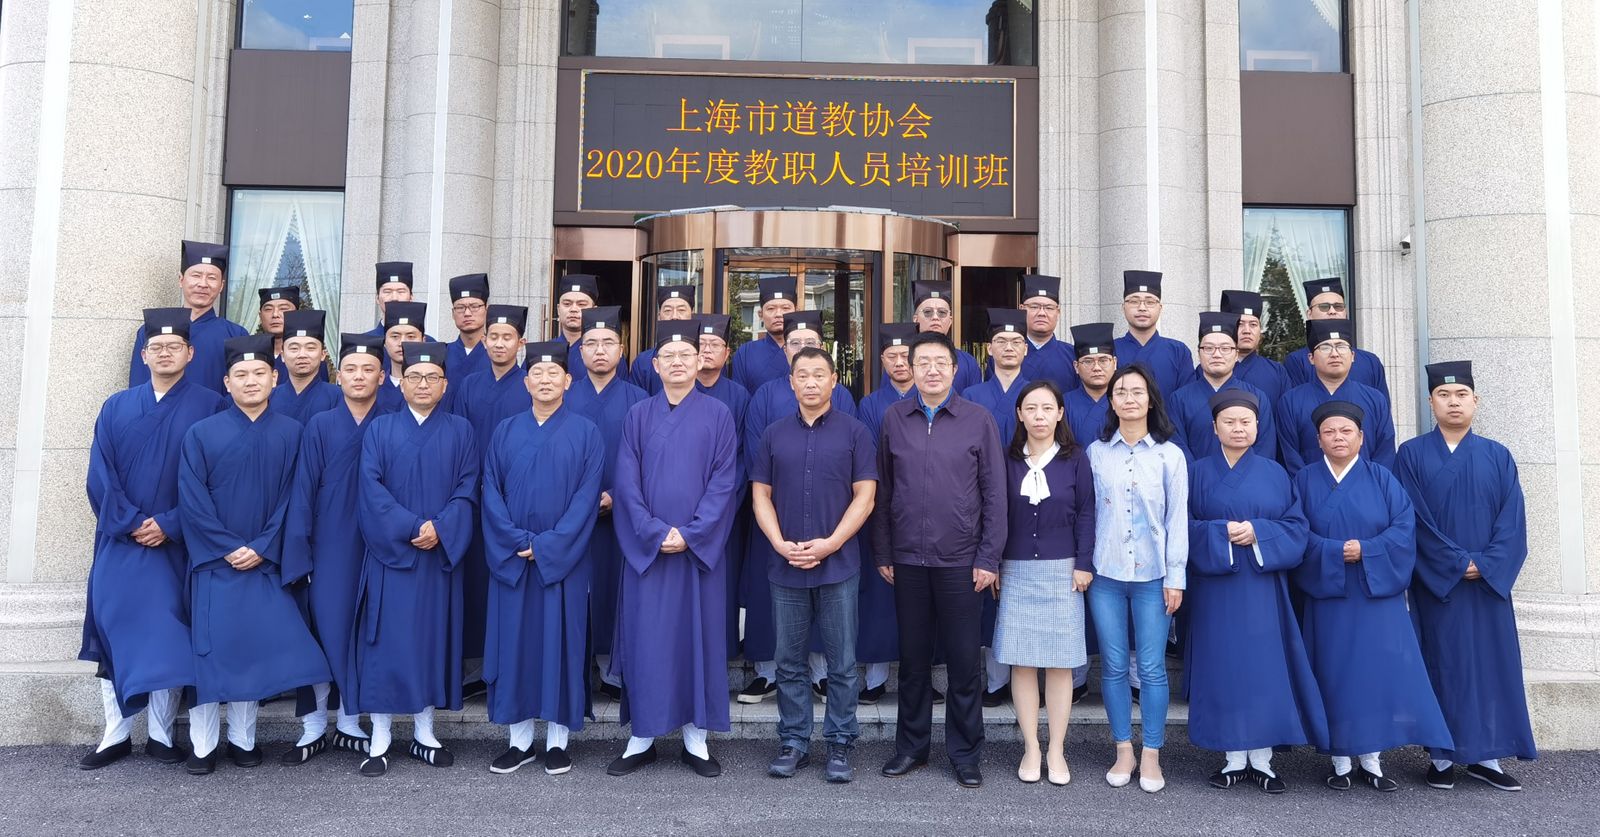 上海市道教协会举行2020年度教职人员培训班